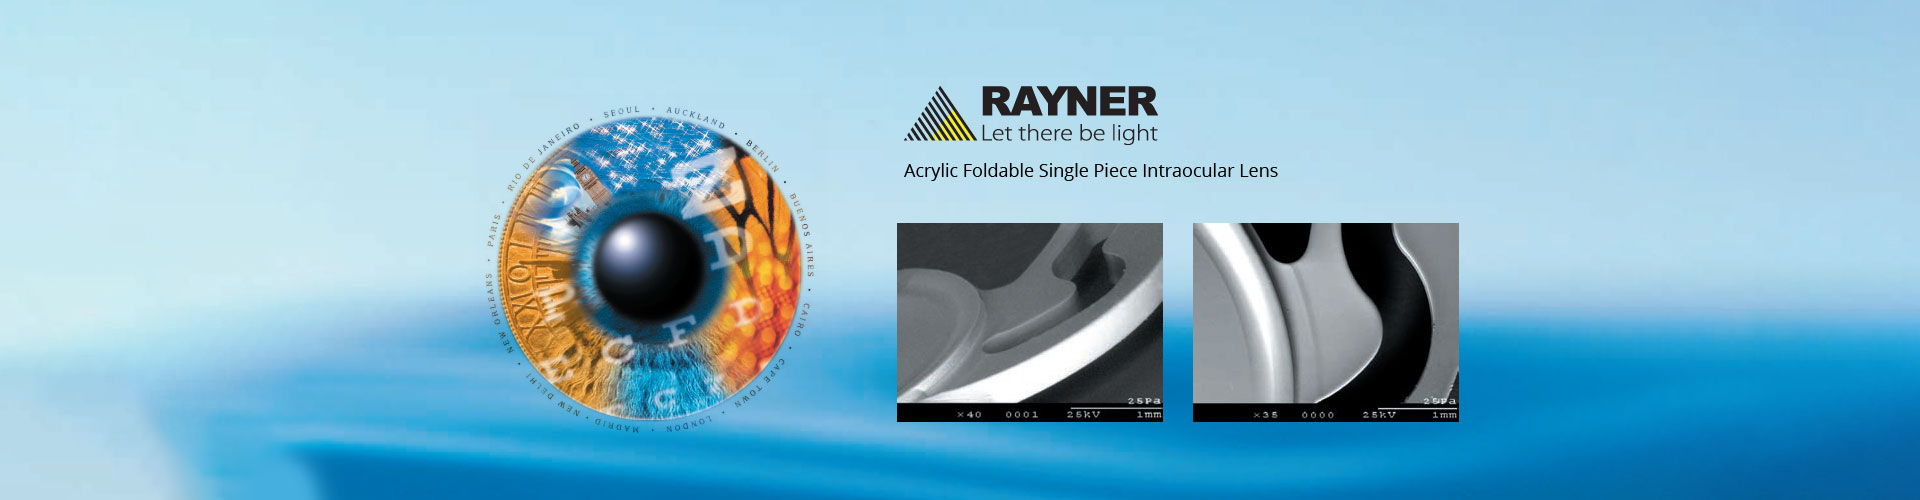 Rayner - Acrylic Foldable Single Piece Intraocular Lens